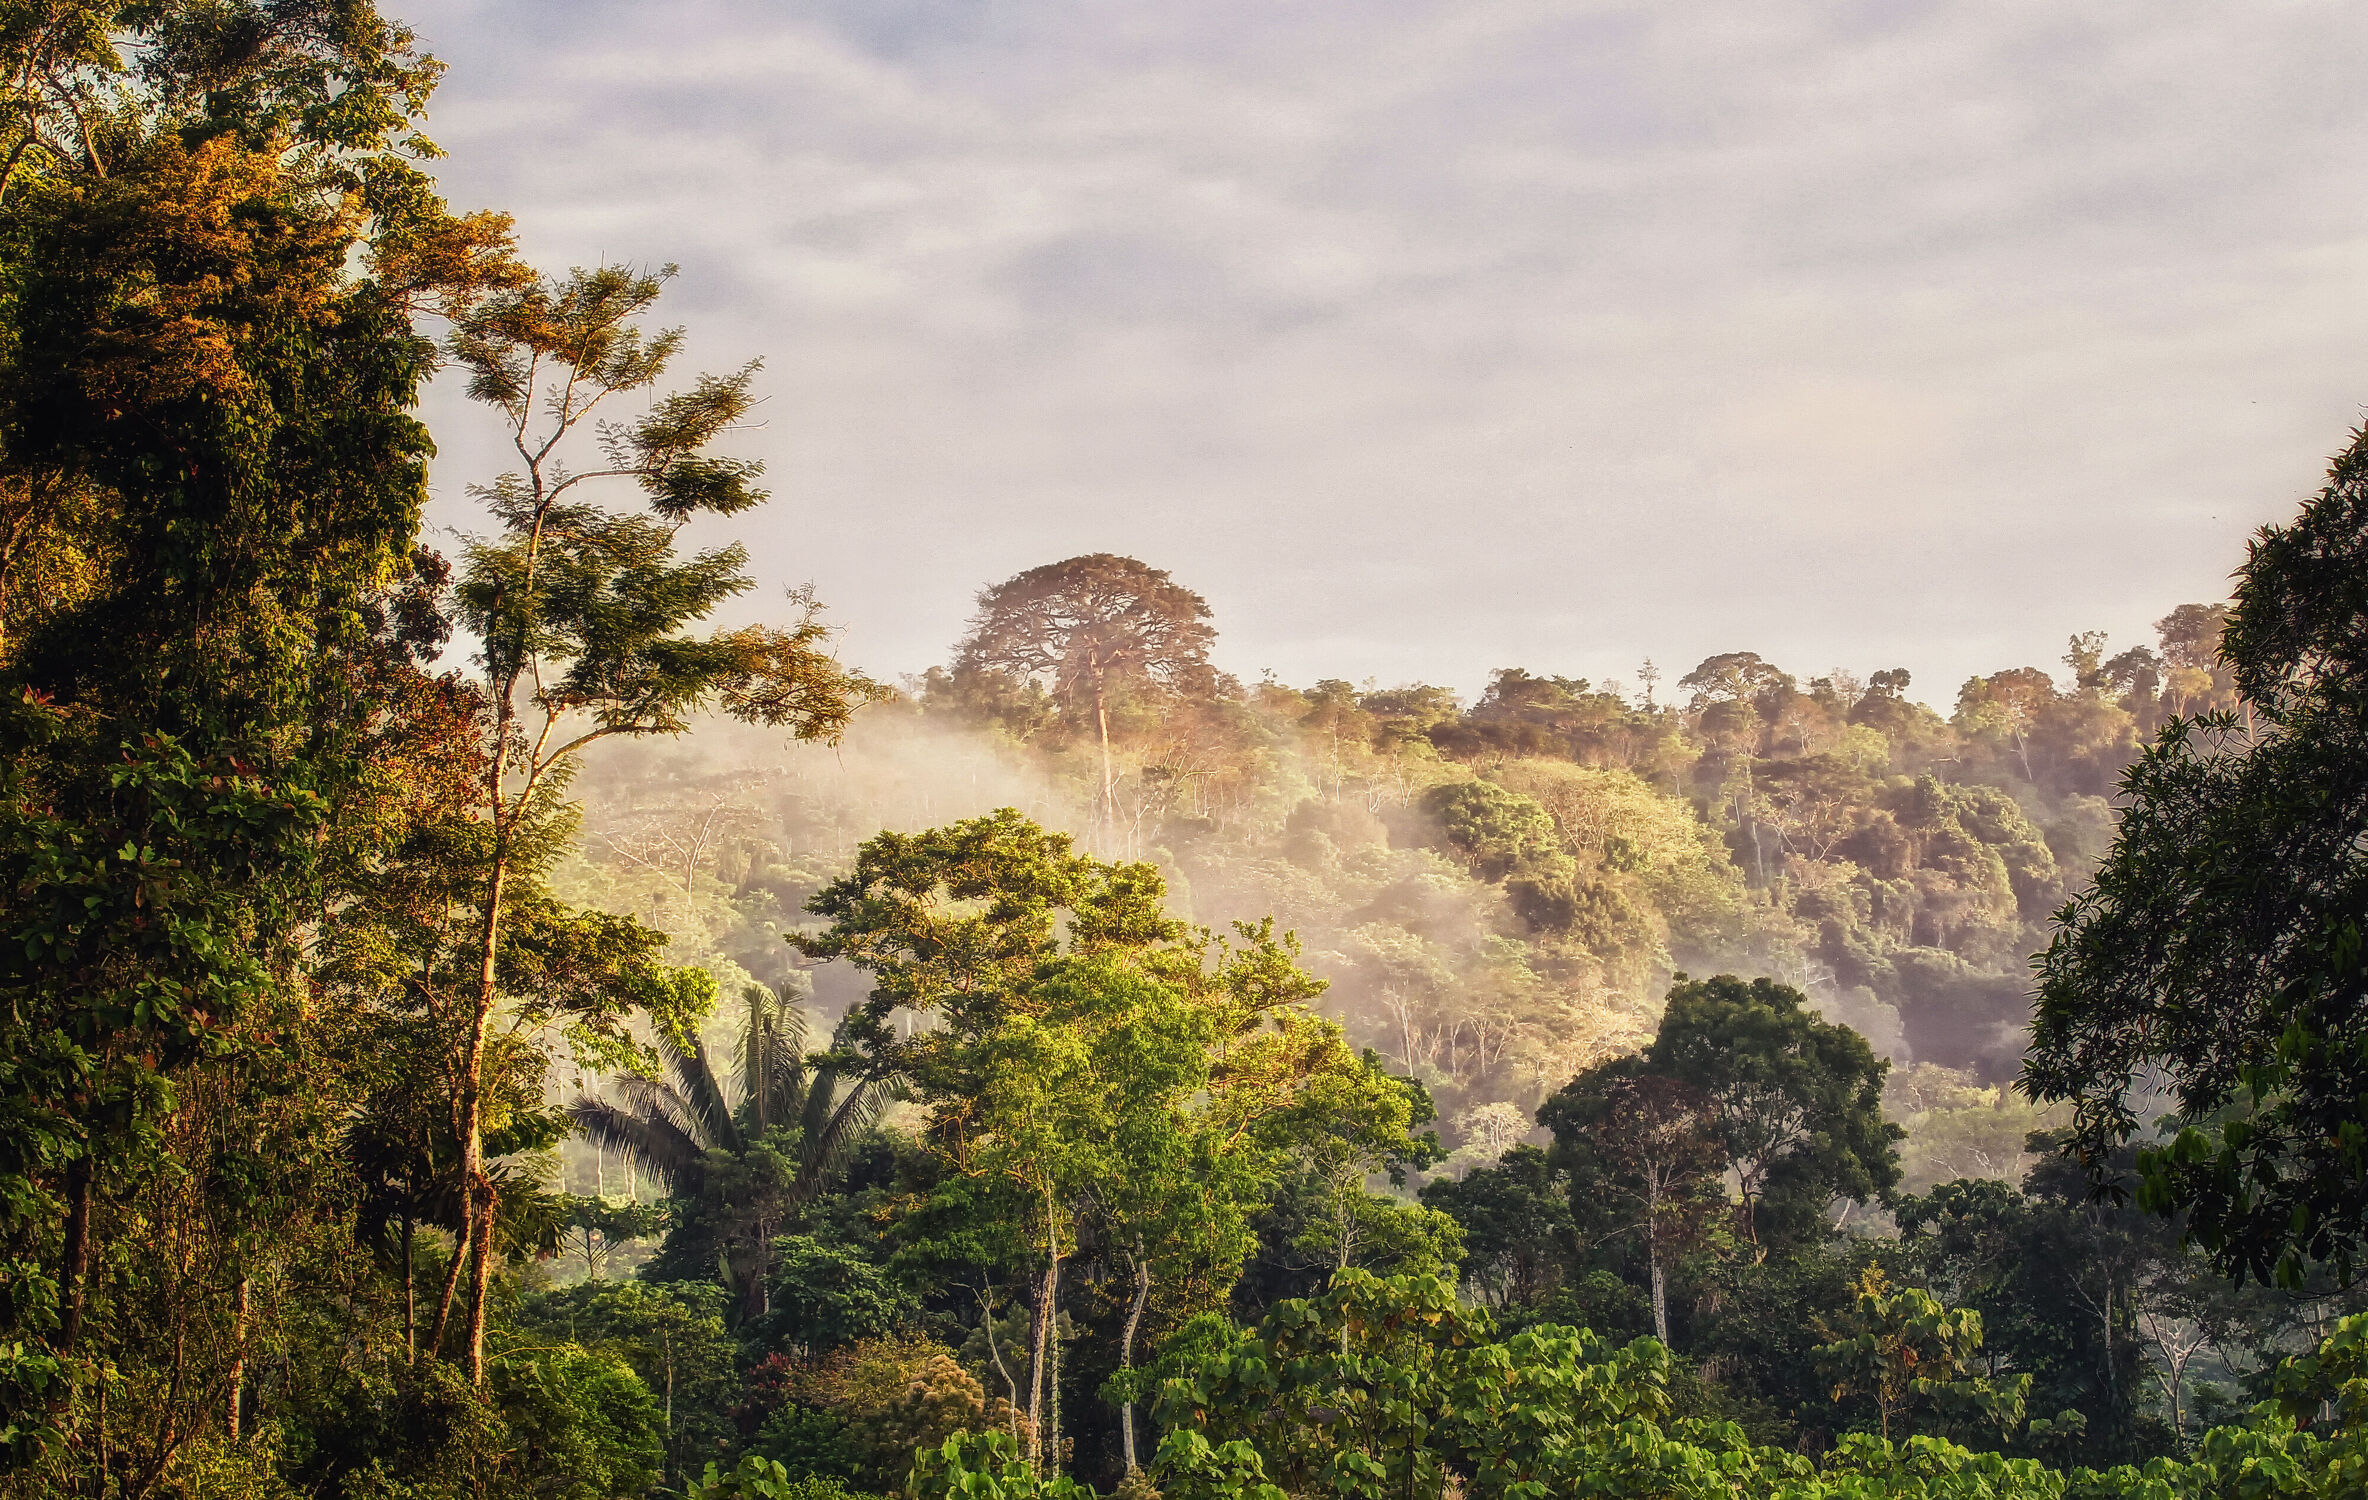 Bild mit Bäume, Wälder, Wald, Morgenstimmung, Urwald, Dschungel, morgennebel, Baumkronen, Ecuador, Amazonas